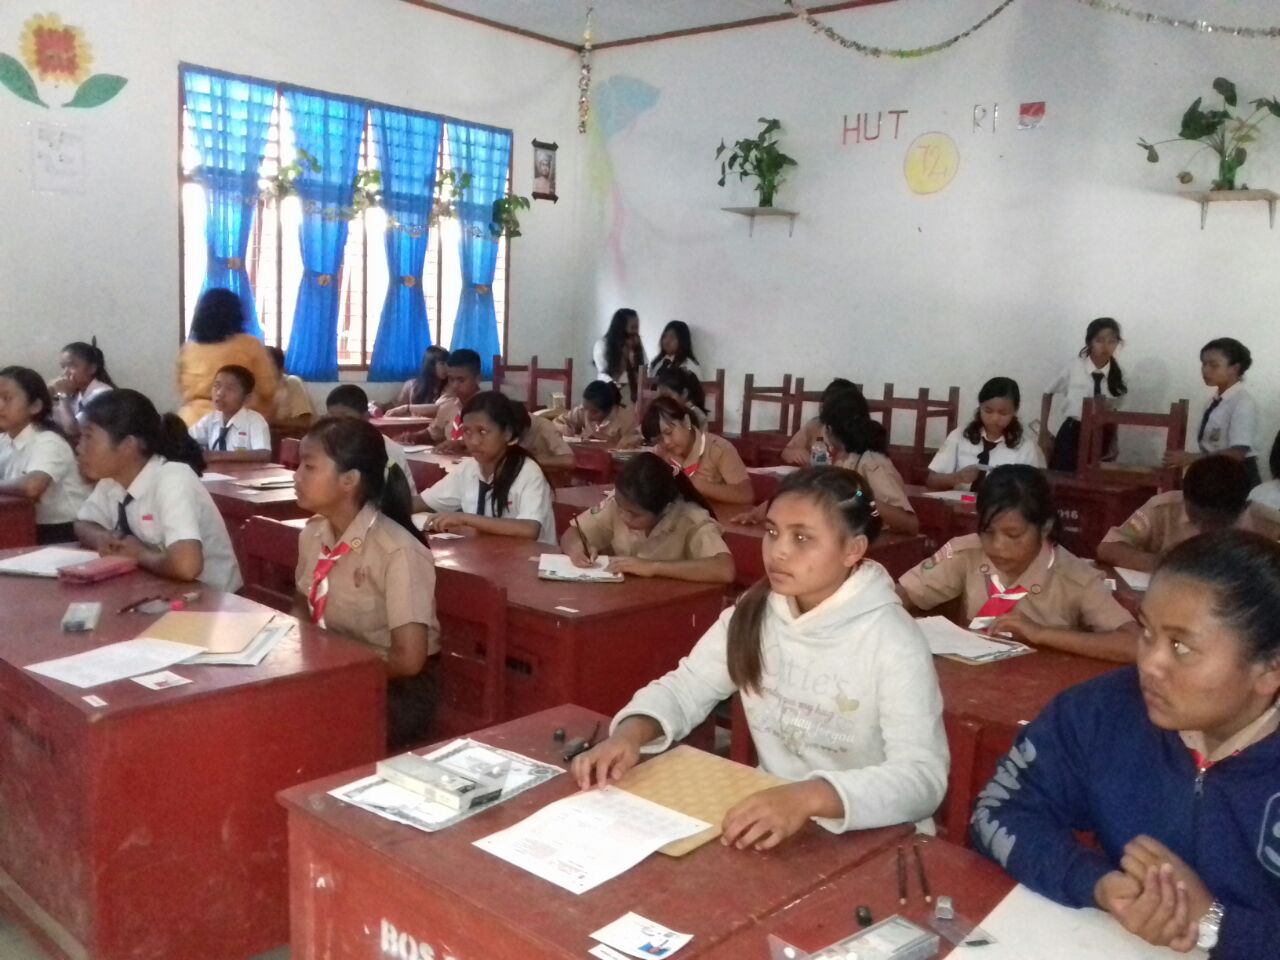 Foto: Para siswa/i dari berbagai Sekolah SMP kelas 9 di kabupaten Samosir peserta seleksi test masuk SMA SUD Laguboti